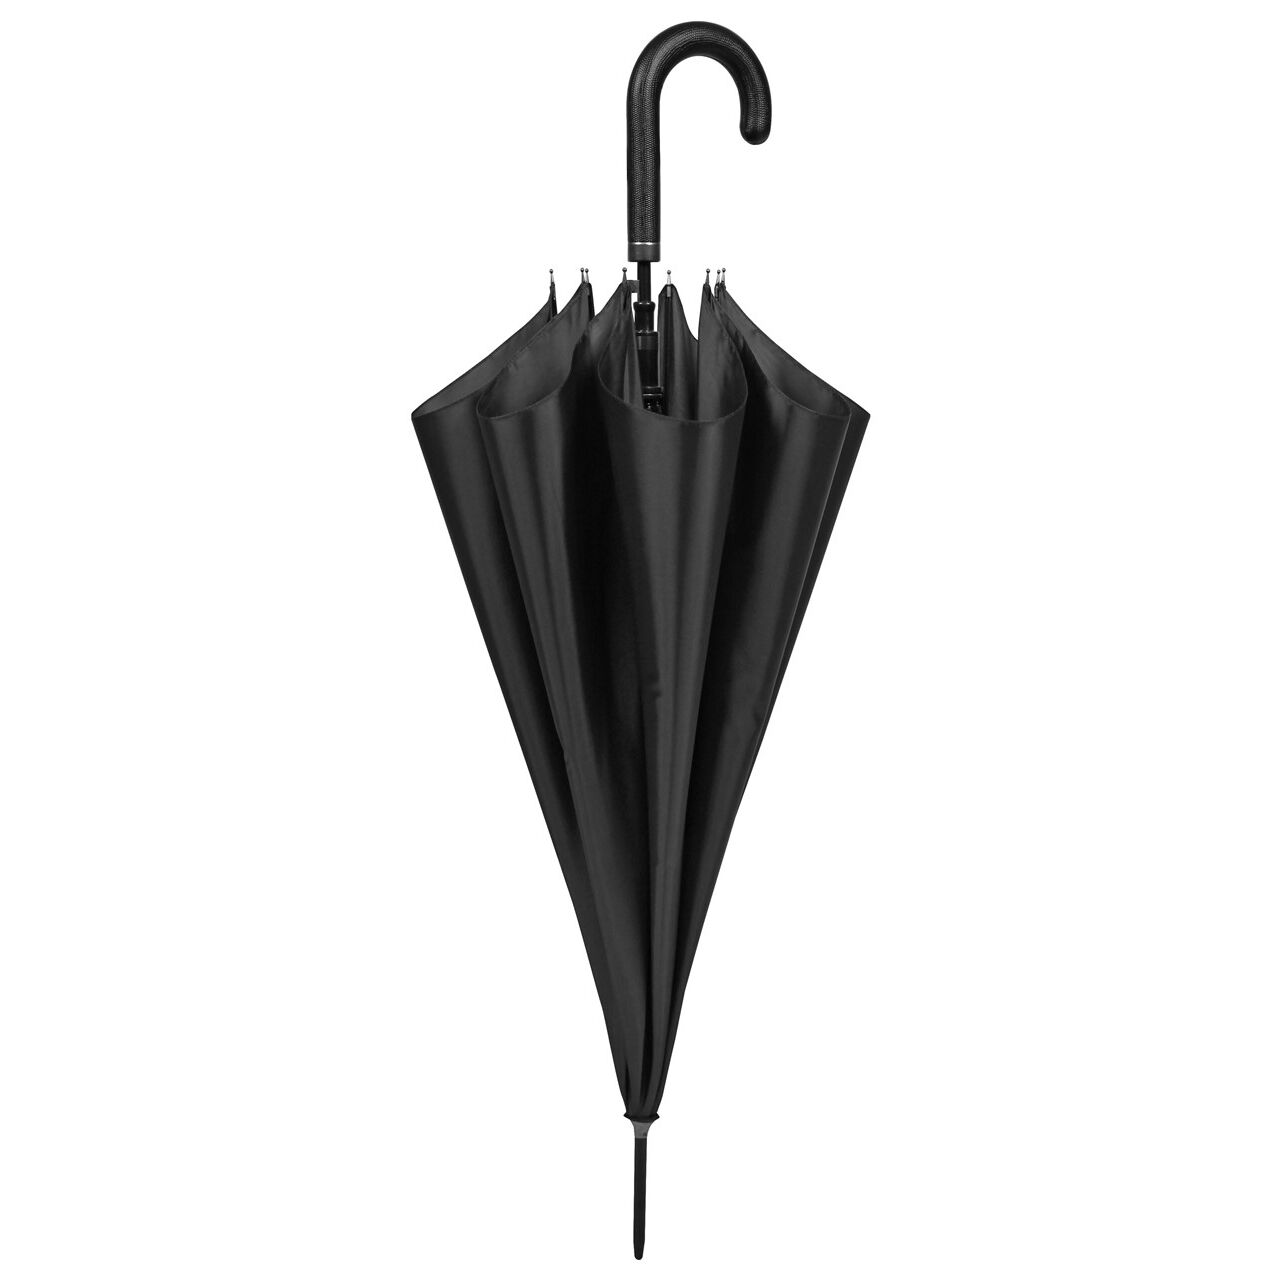 Paraguas Perletti hombre 61cm automatico negro con funda (12/60)